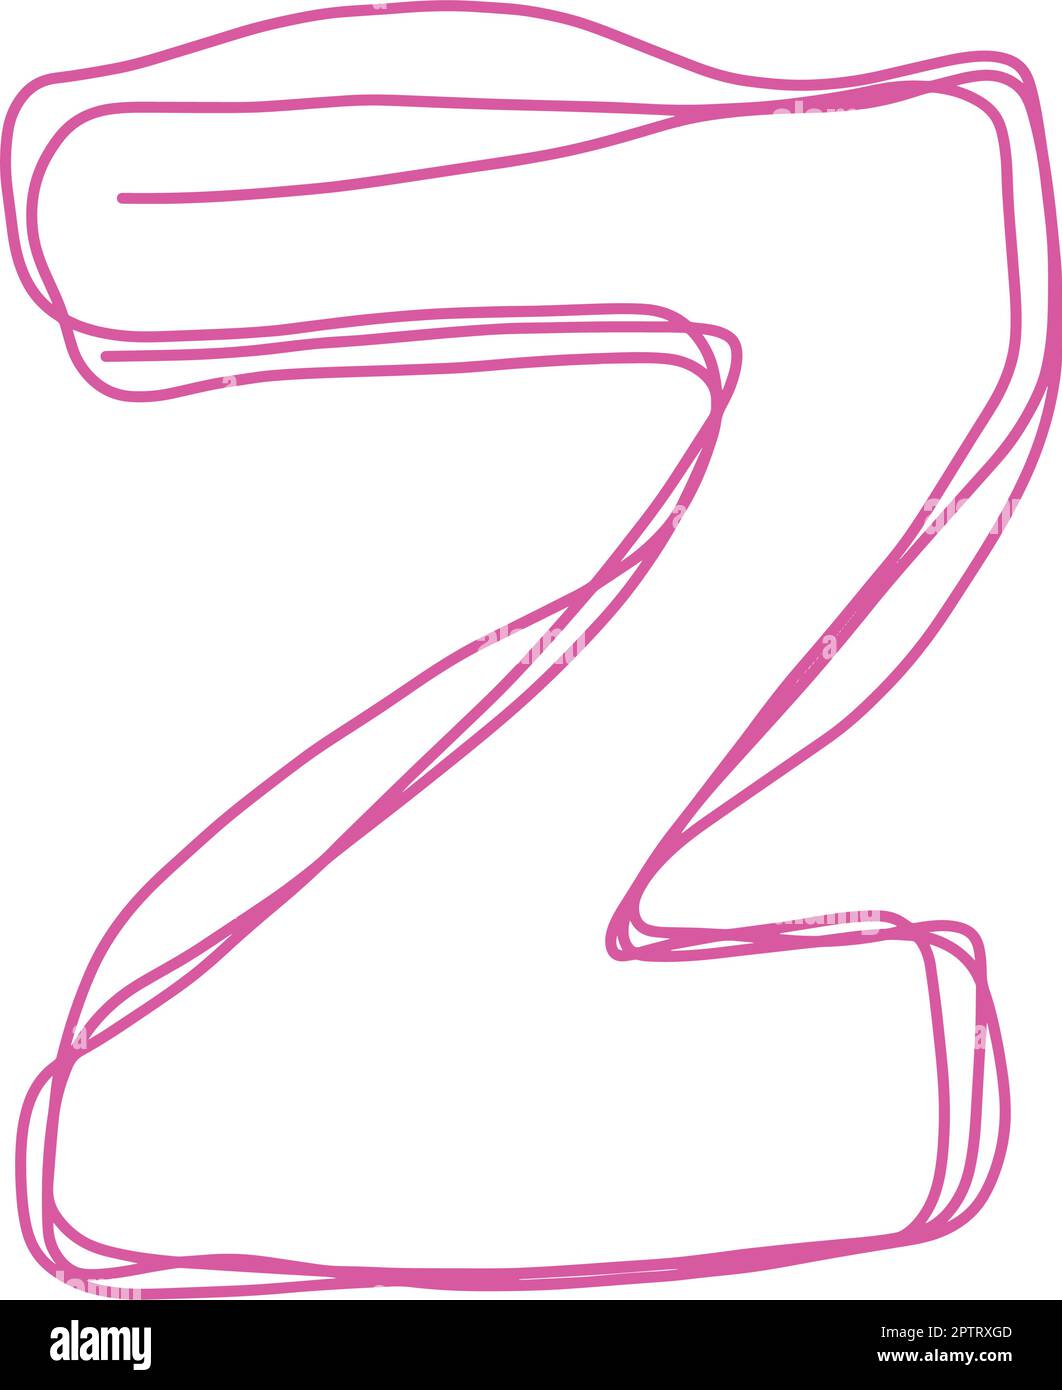 Alphabet Z letter hand drawn outline stroke drawing illustration element art for education Stock Vector